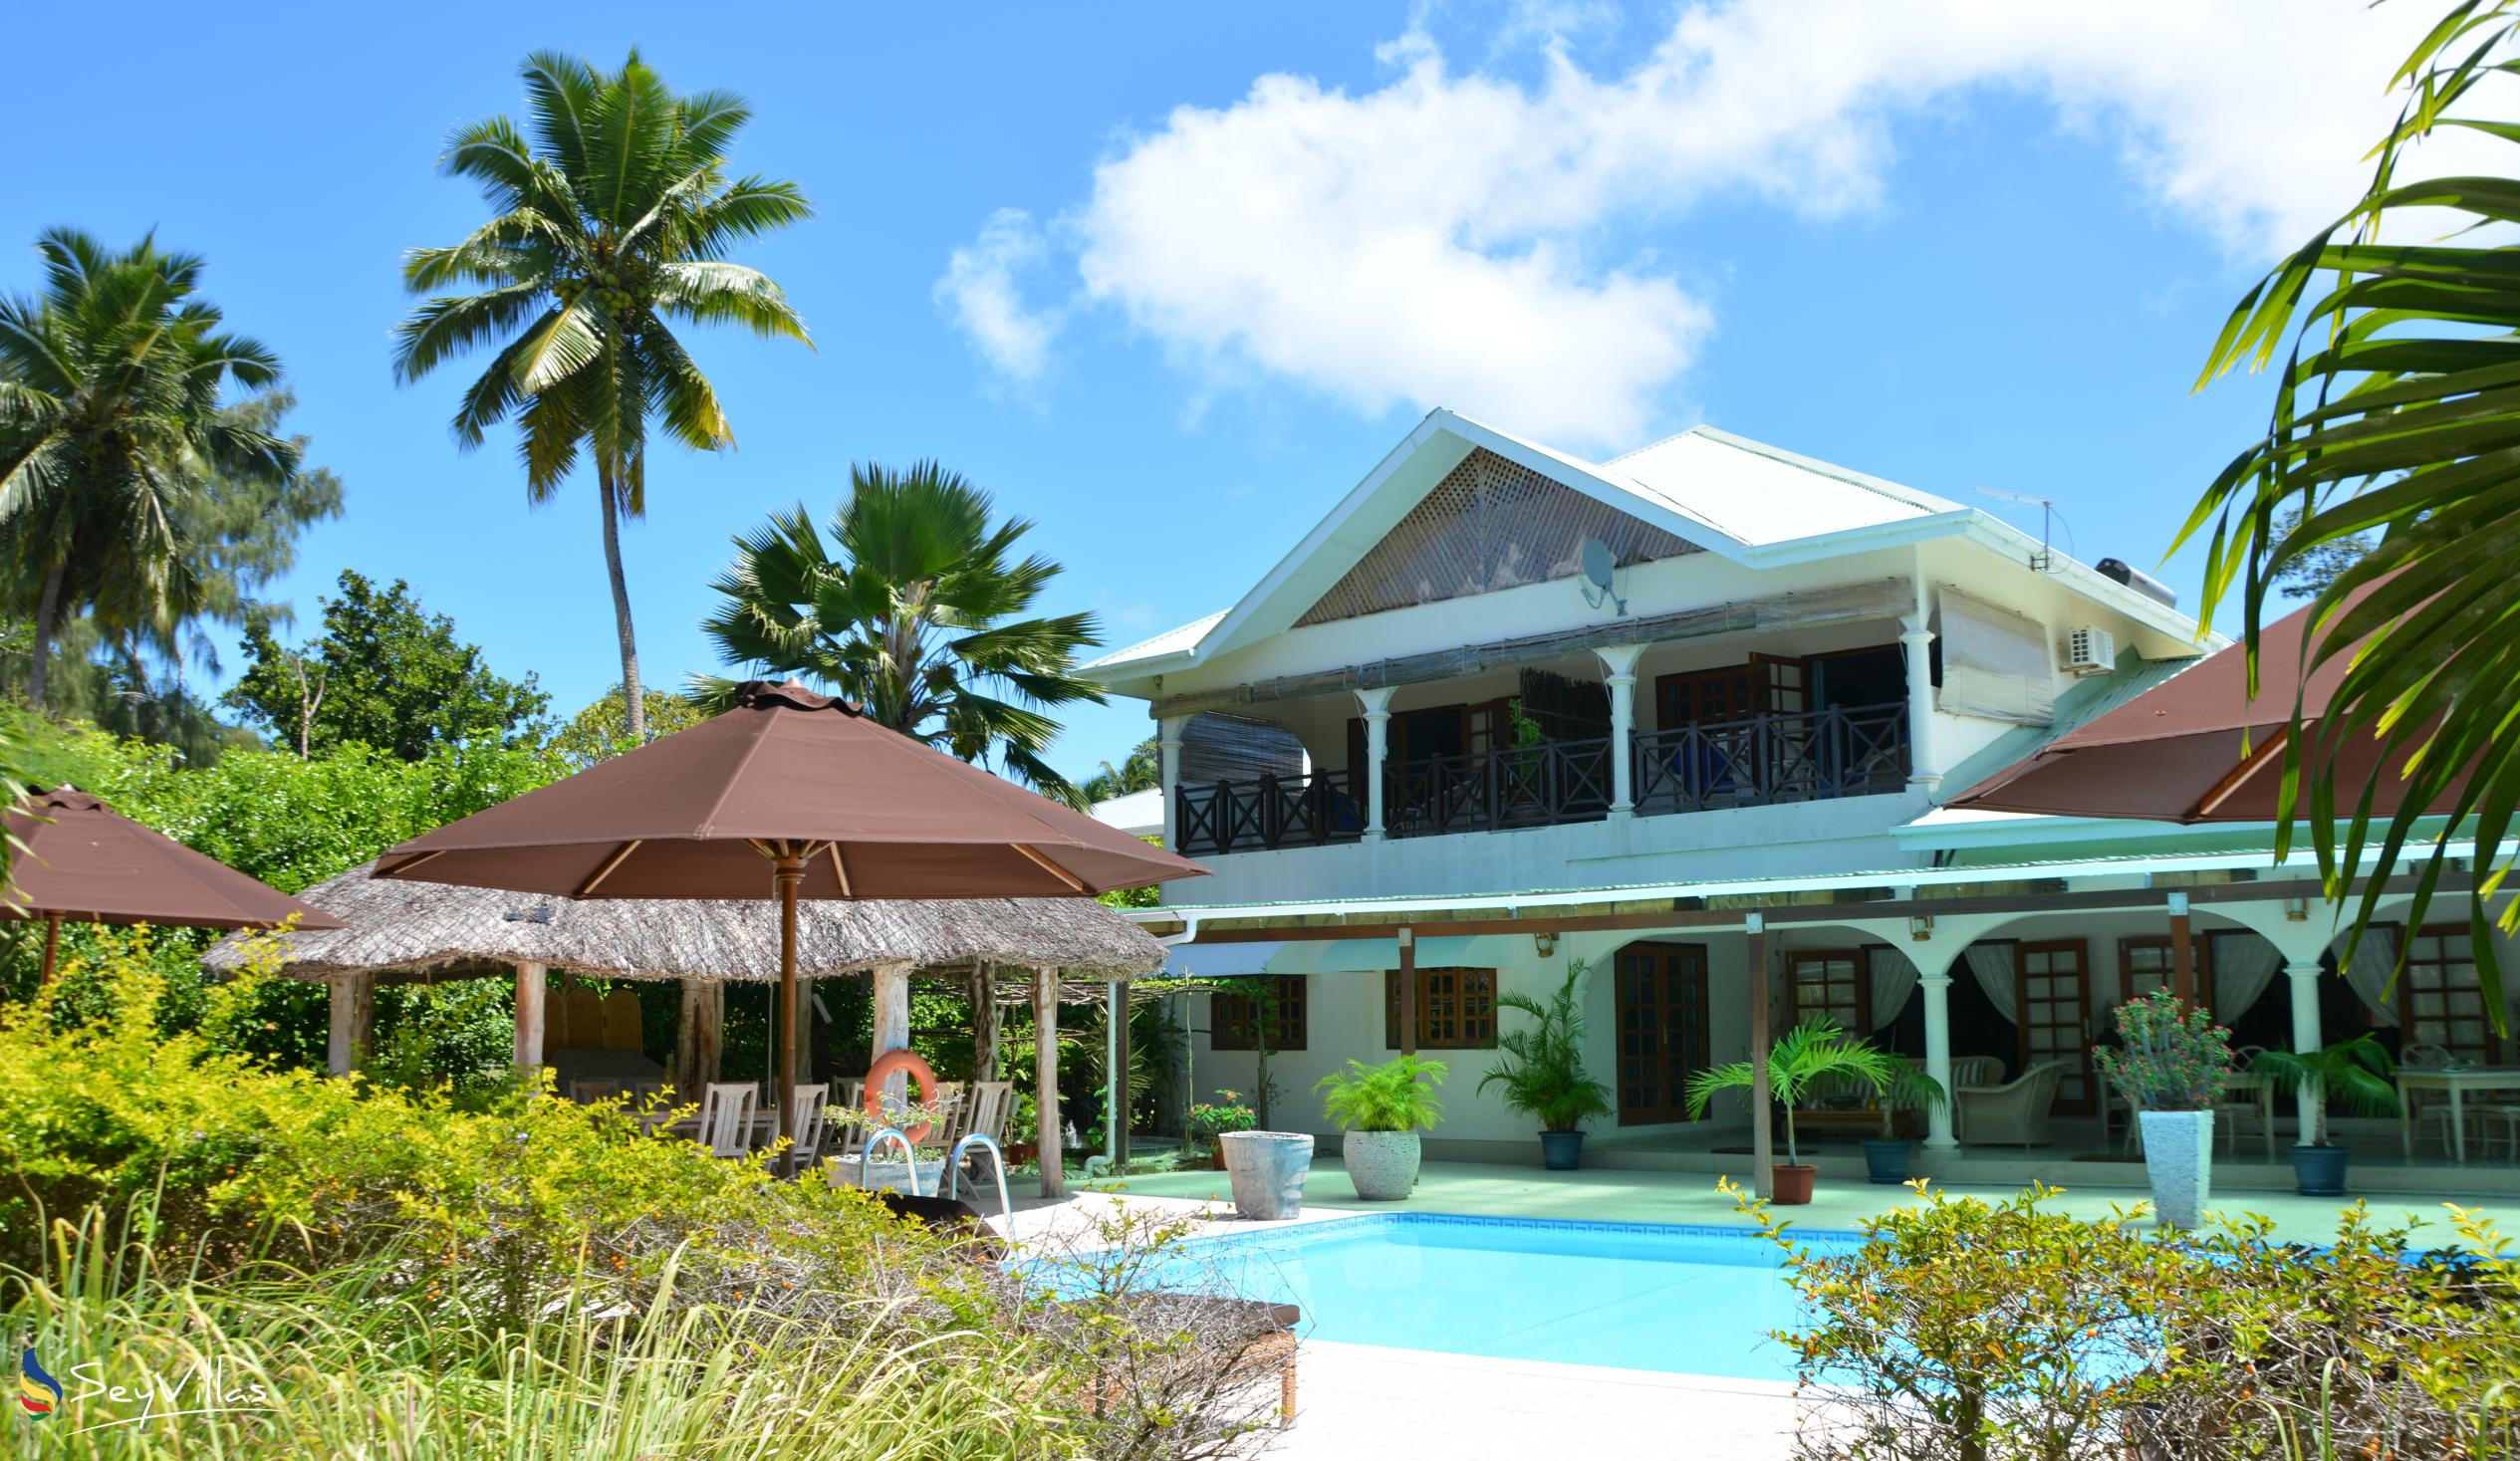 Foto 1: Villa de Cerf - Extérieur - Cerf Island (Seychelles)